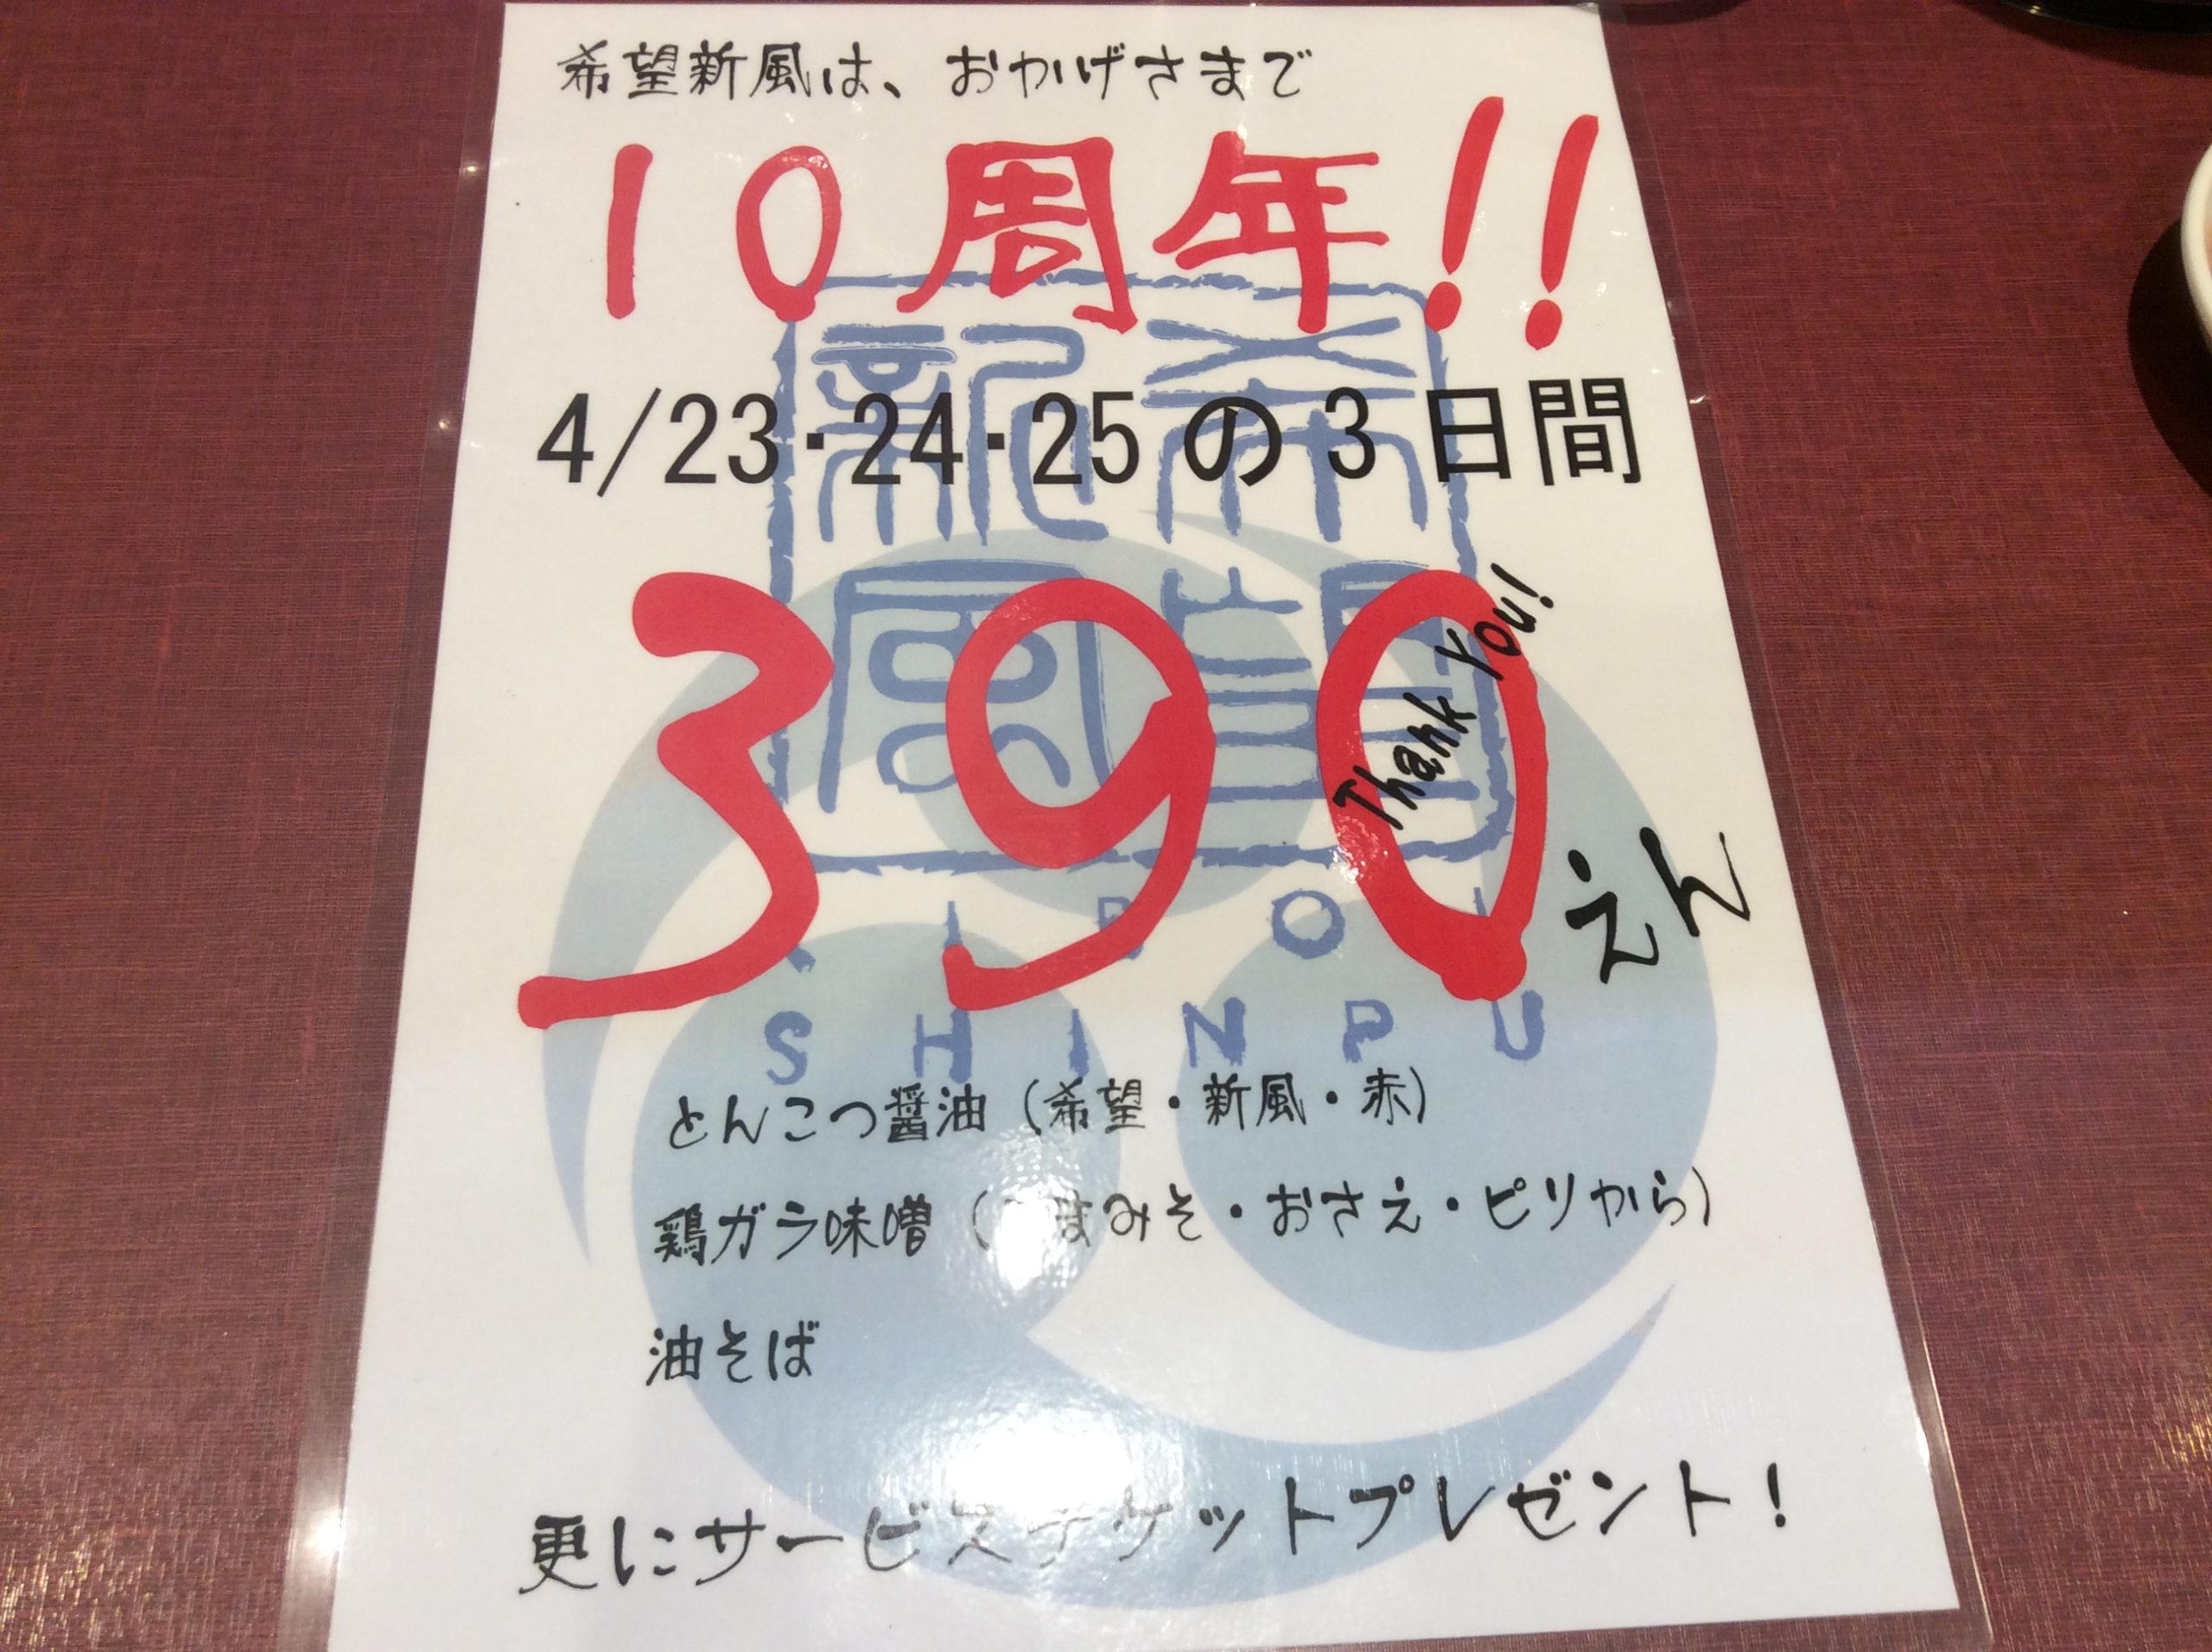 希望新風のラーメンが390円